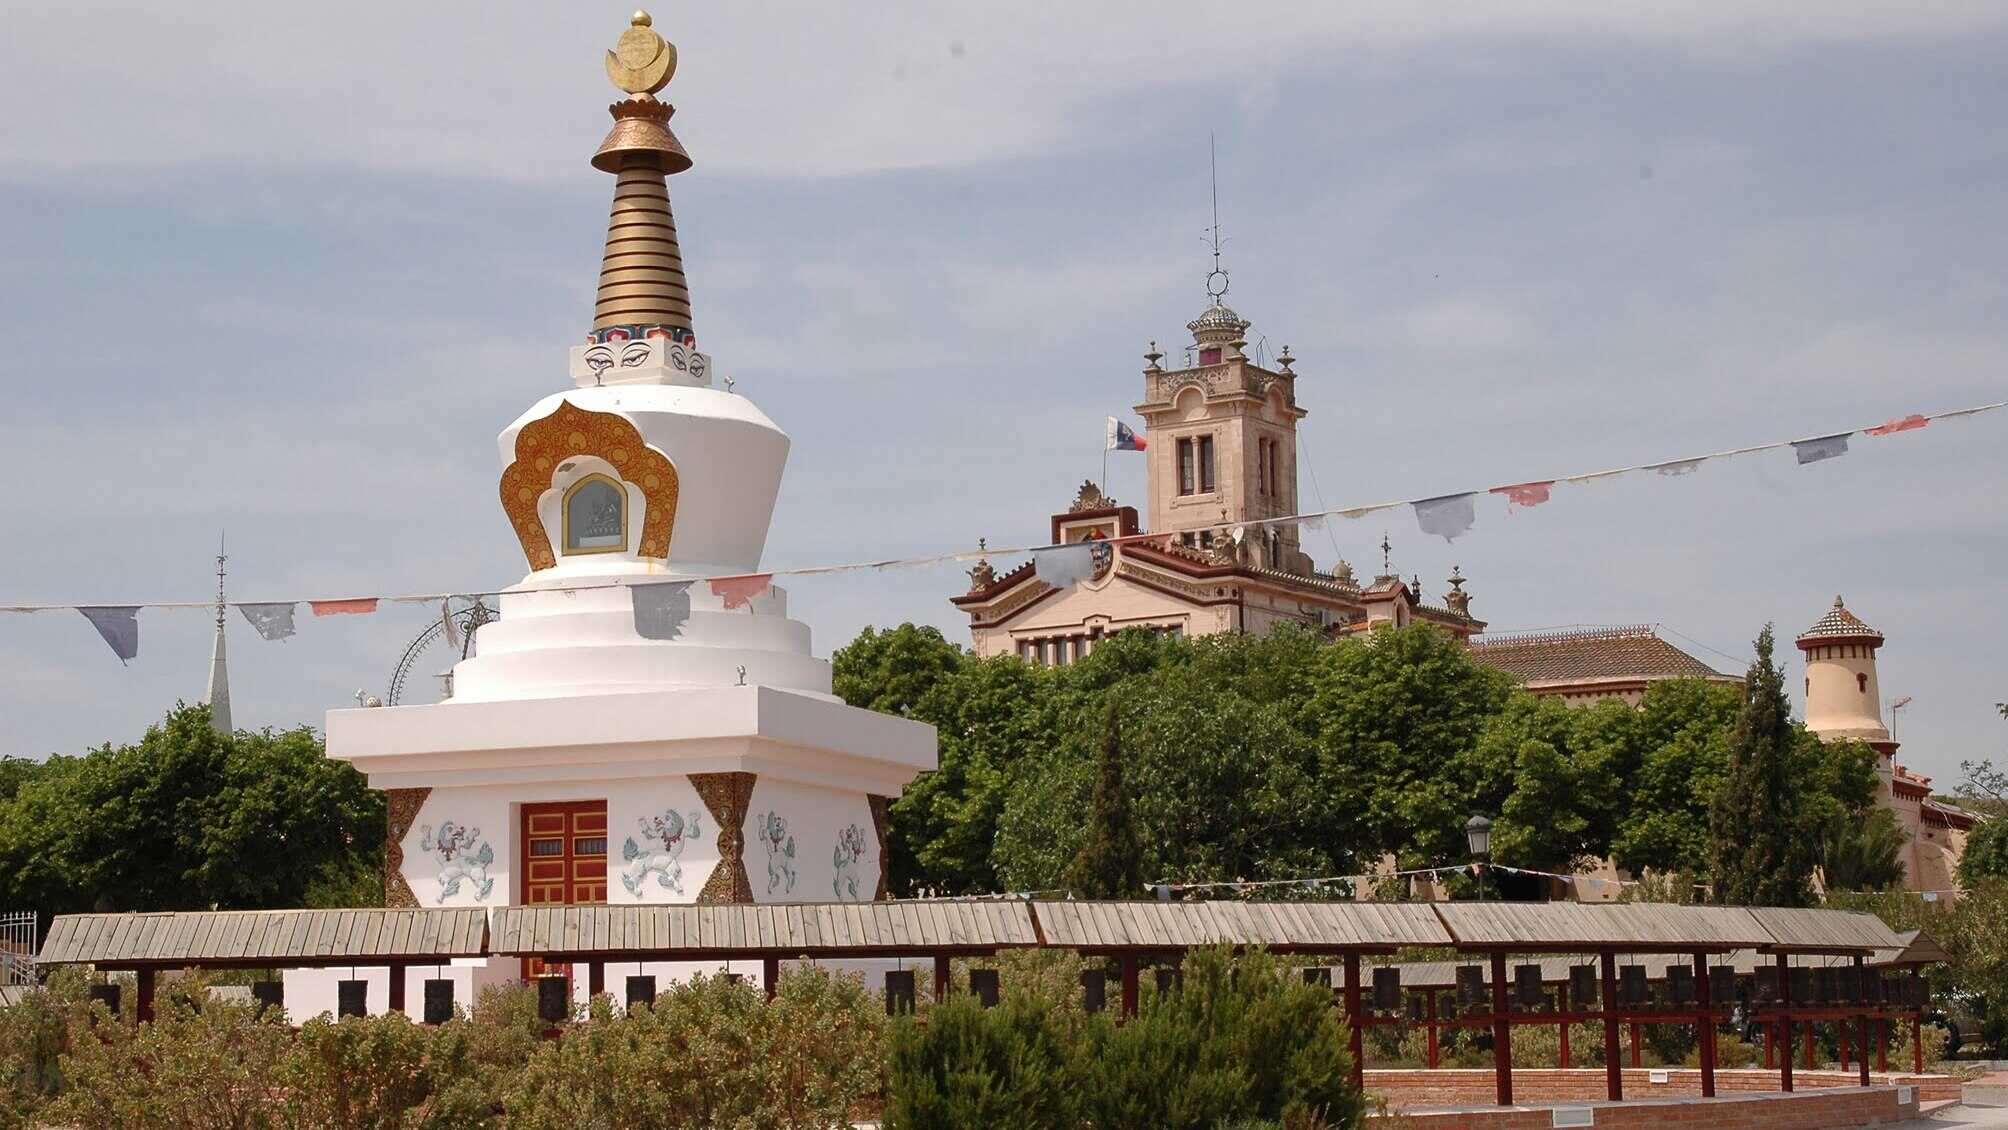 Templo budista del Garraf: cómo visitarlo, horarios y precios